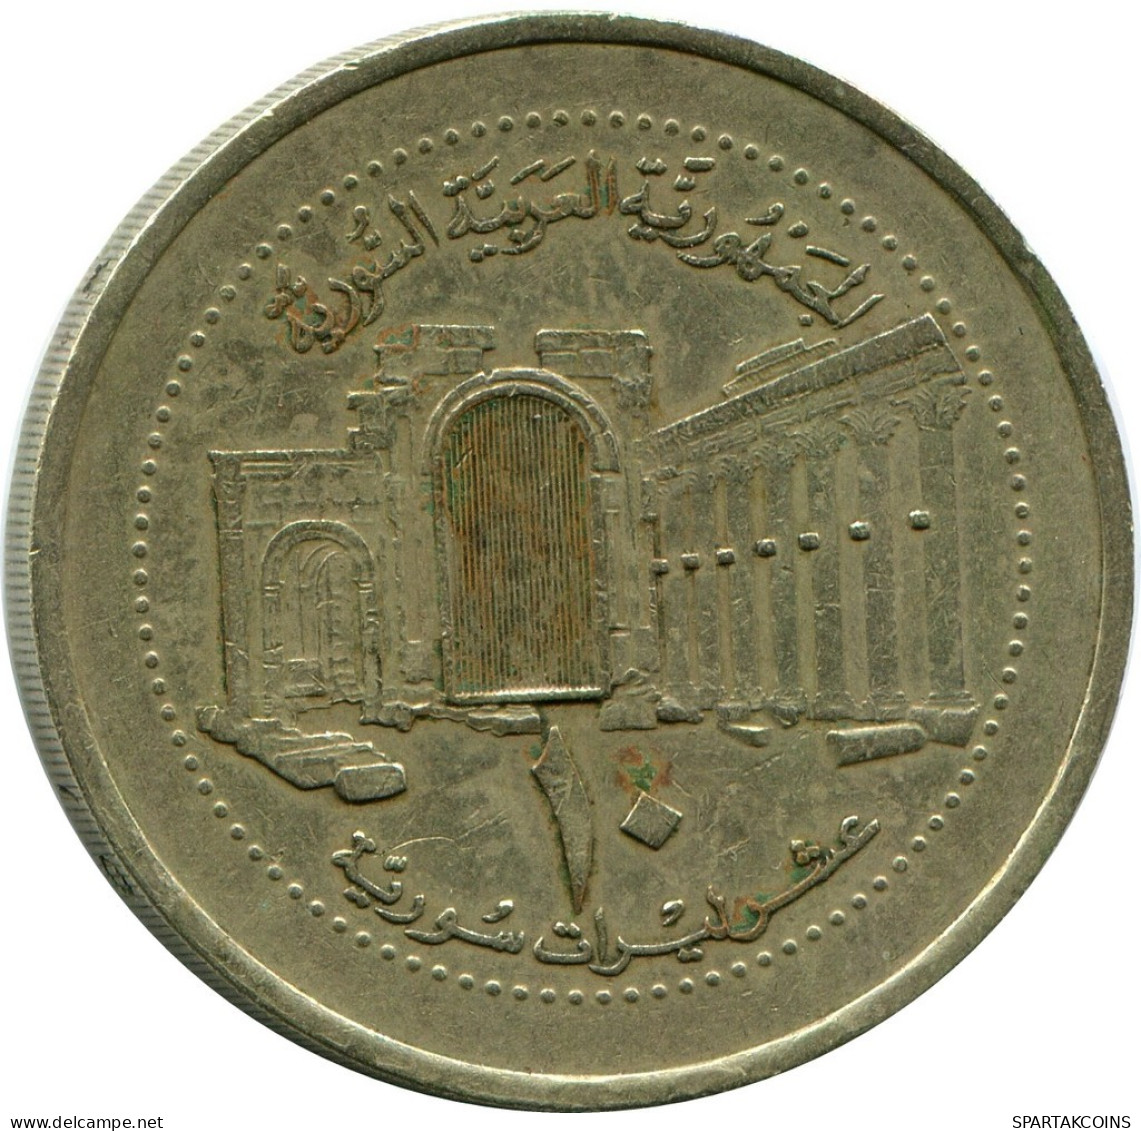 10 LIRAS / POUNDS 2003 SYRIEN SYRIA Islamisch Münze #AP566.D.D.A - Syrië